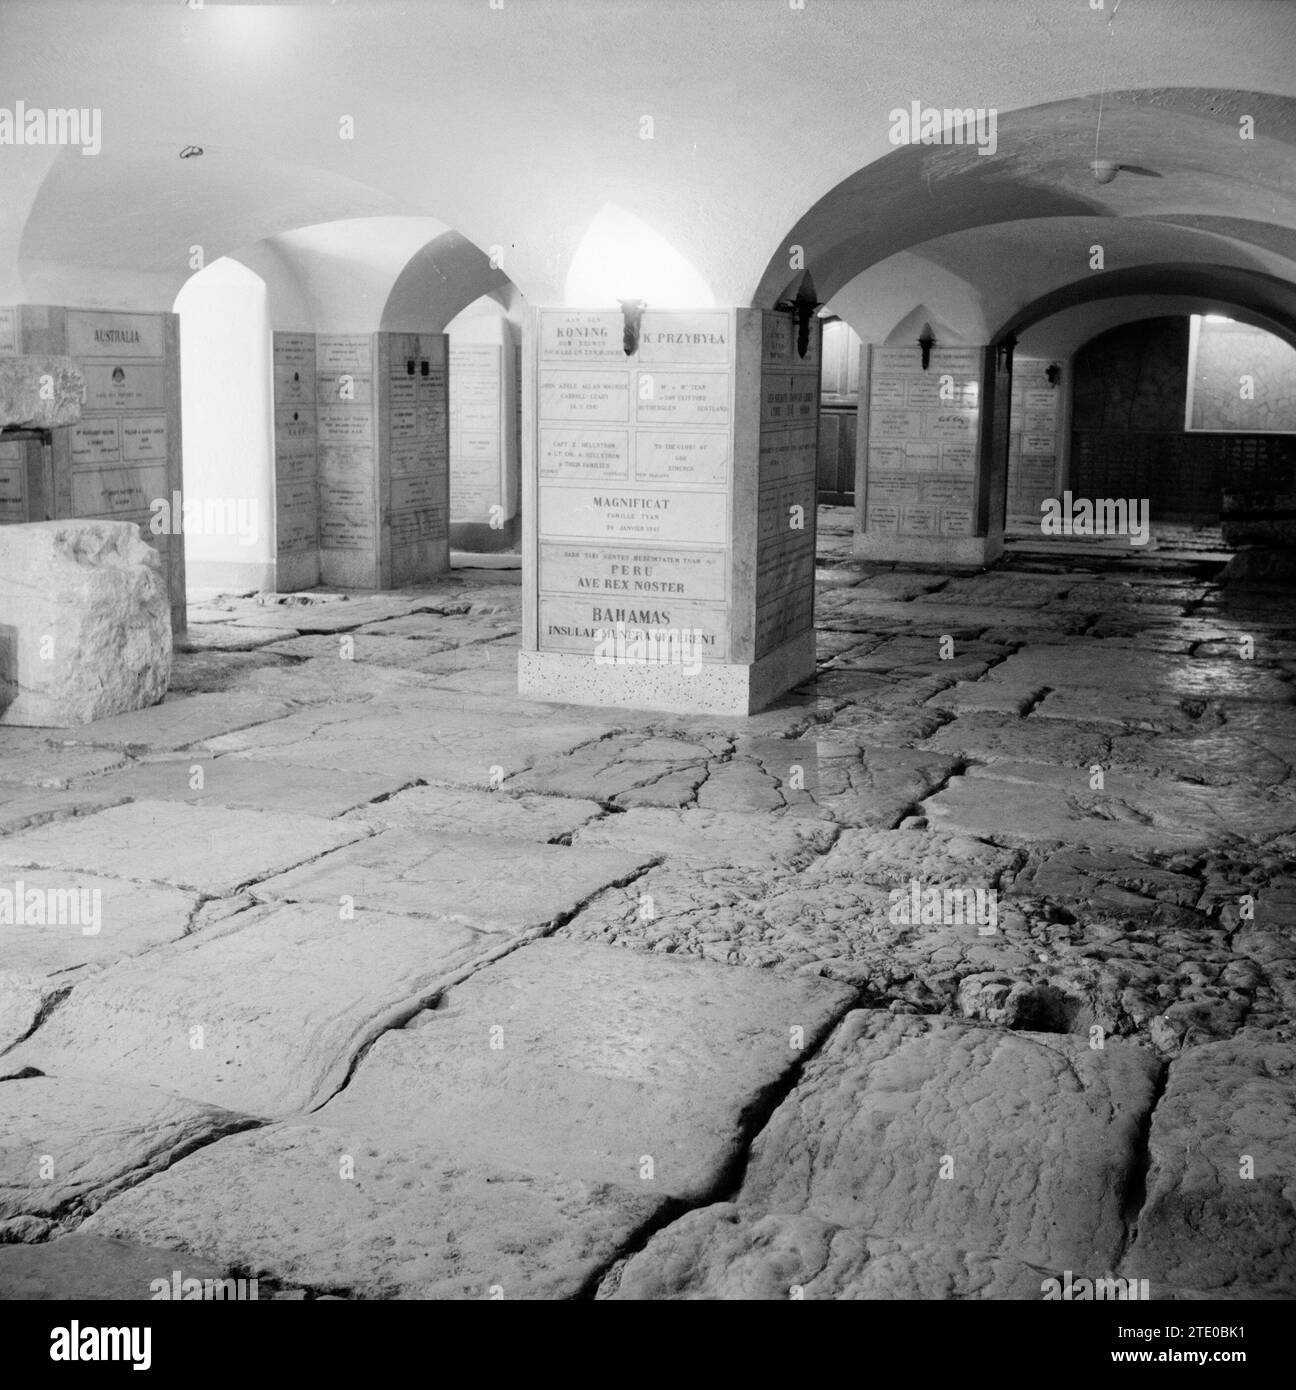 Cantina Lithostrotos contenente la pavimentazione originale che avrebbe coperto la "via dolorosa" al tempo della crocifissione di Gesù. Seconda stazione circa 1950-1955 Foto Stock